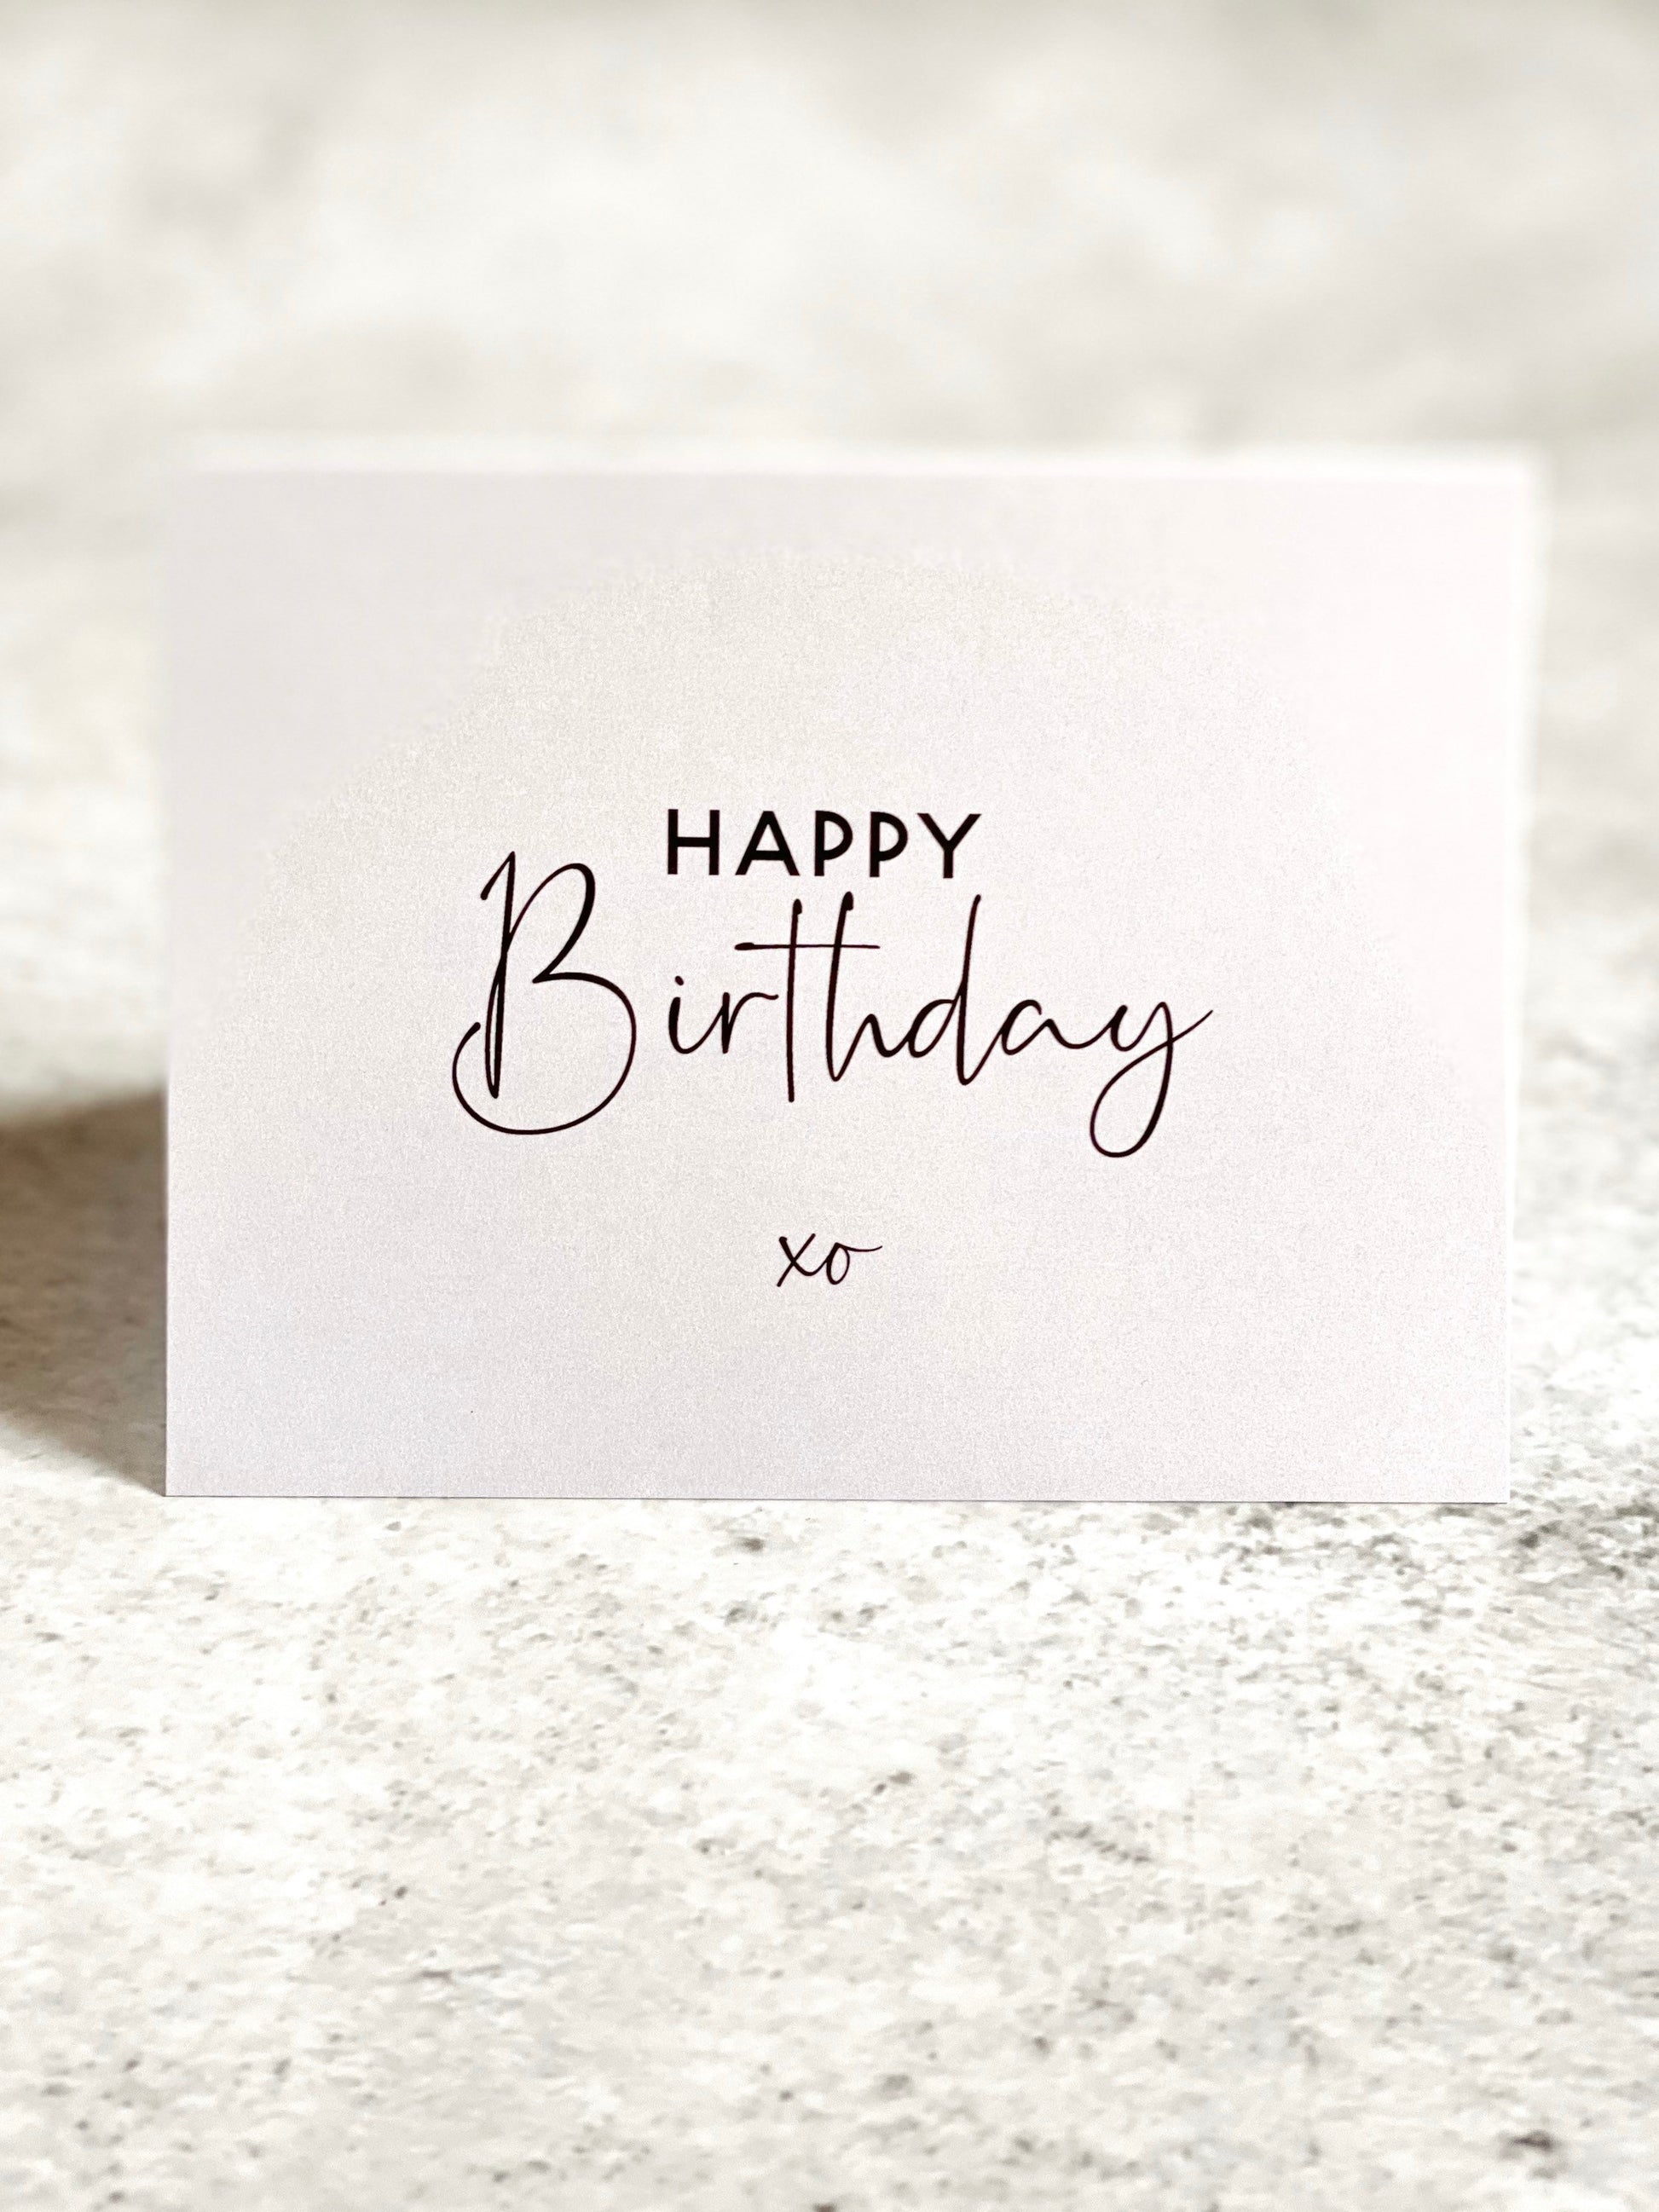 Best Day Ever Birthday Card Cute Birthday Card Greeting Card A2 Birthday  Card Printed Birthday Card -  Canada